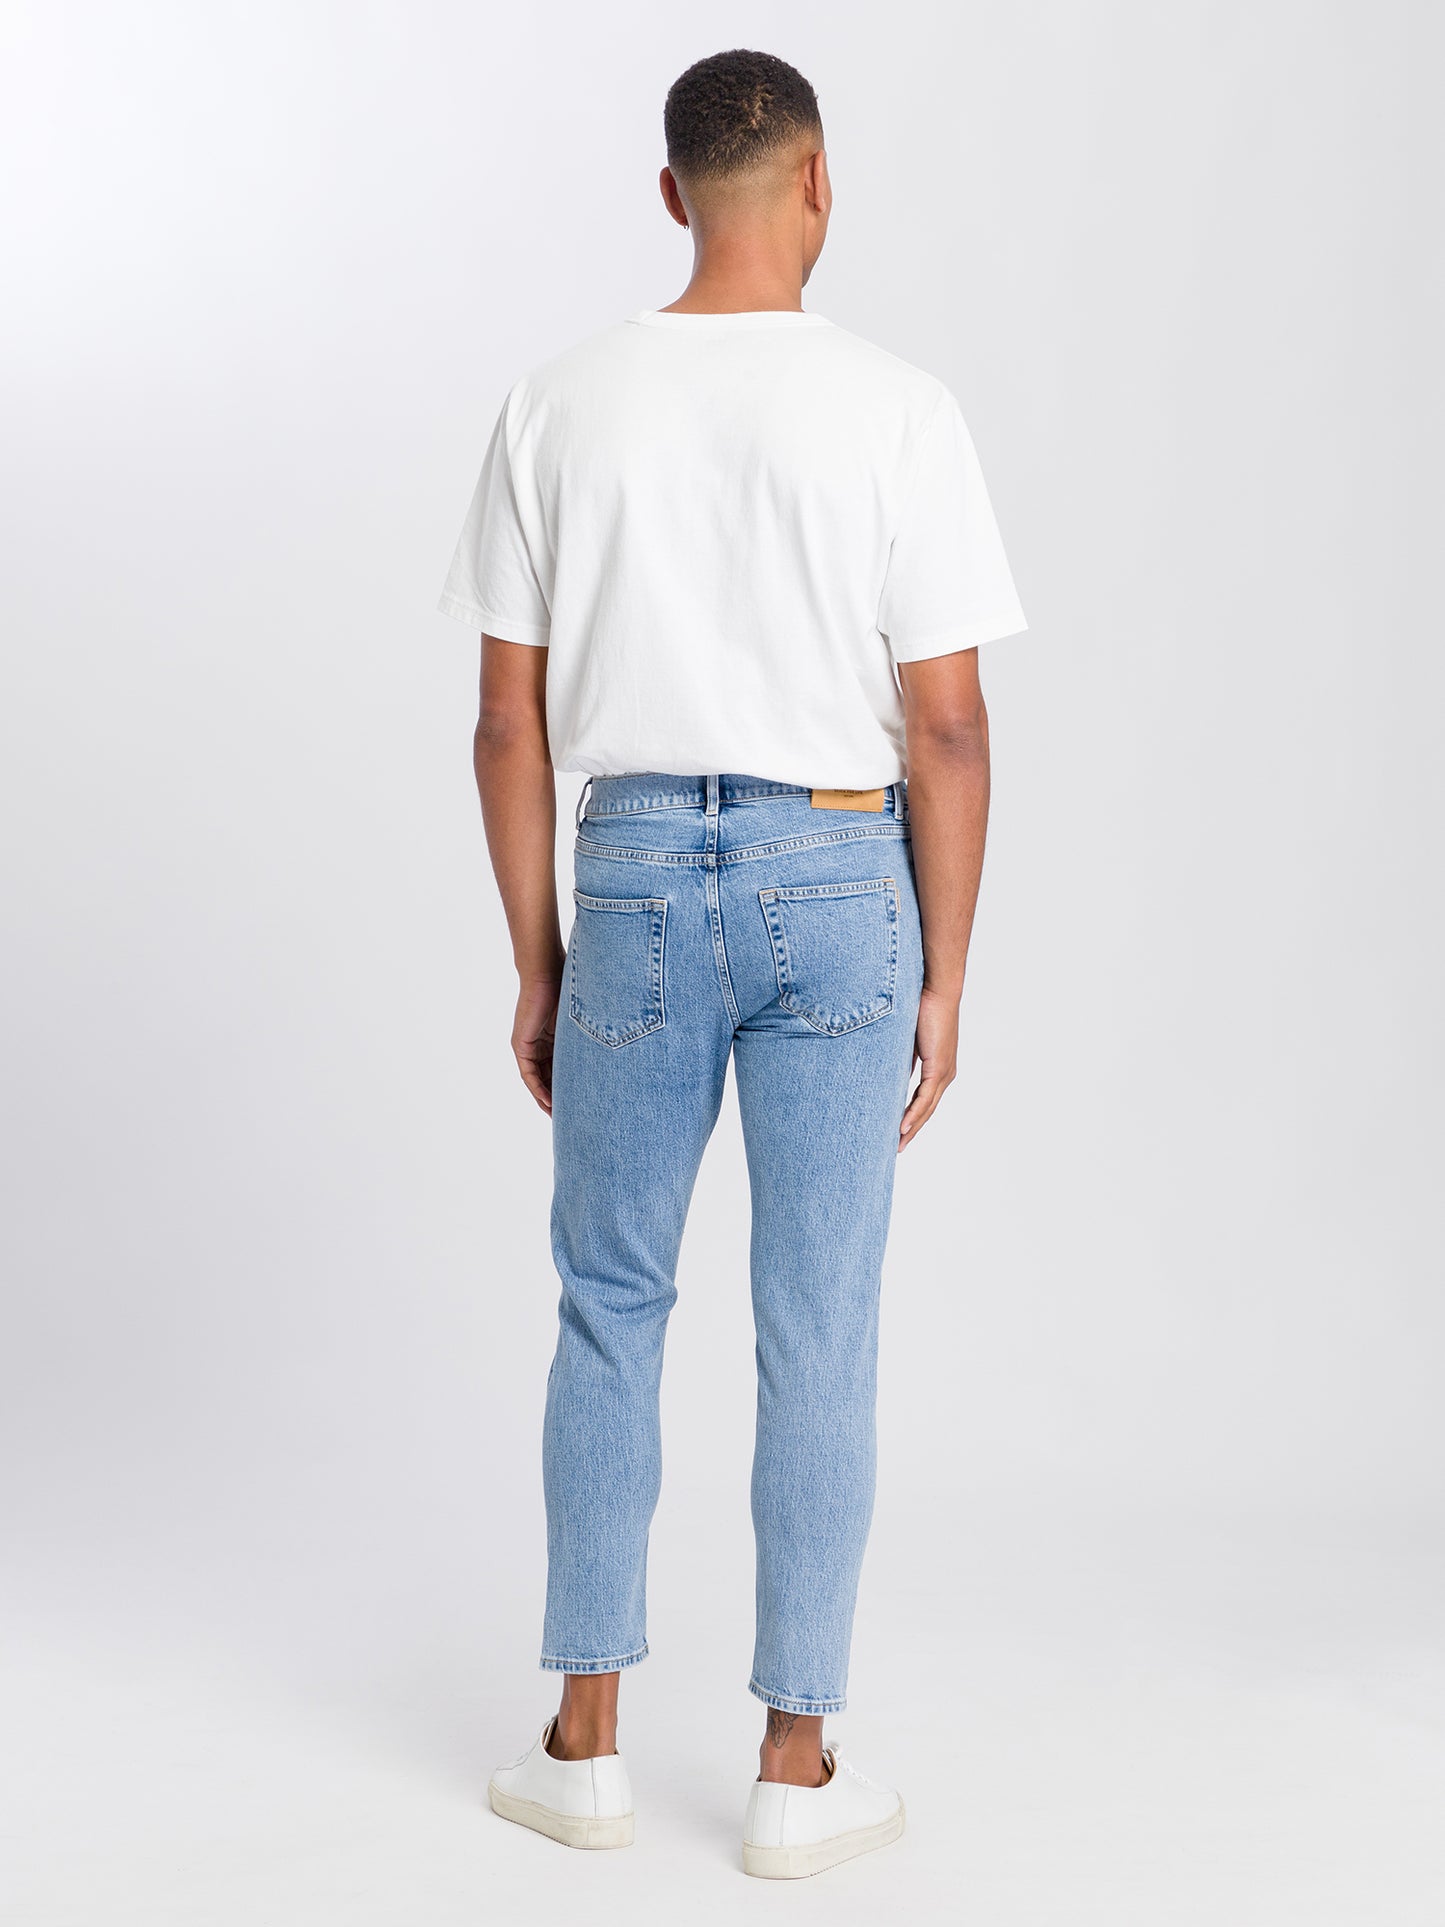 Fınn men's jeans regular fit tapered leg light blue